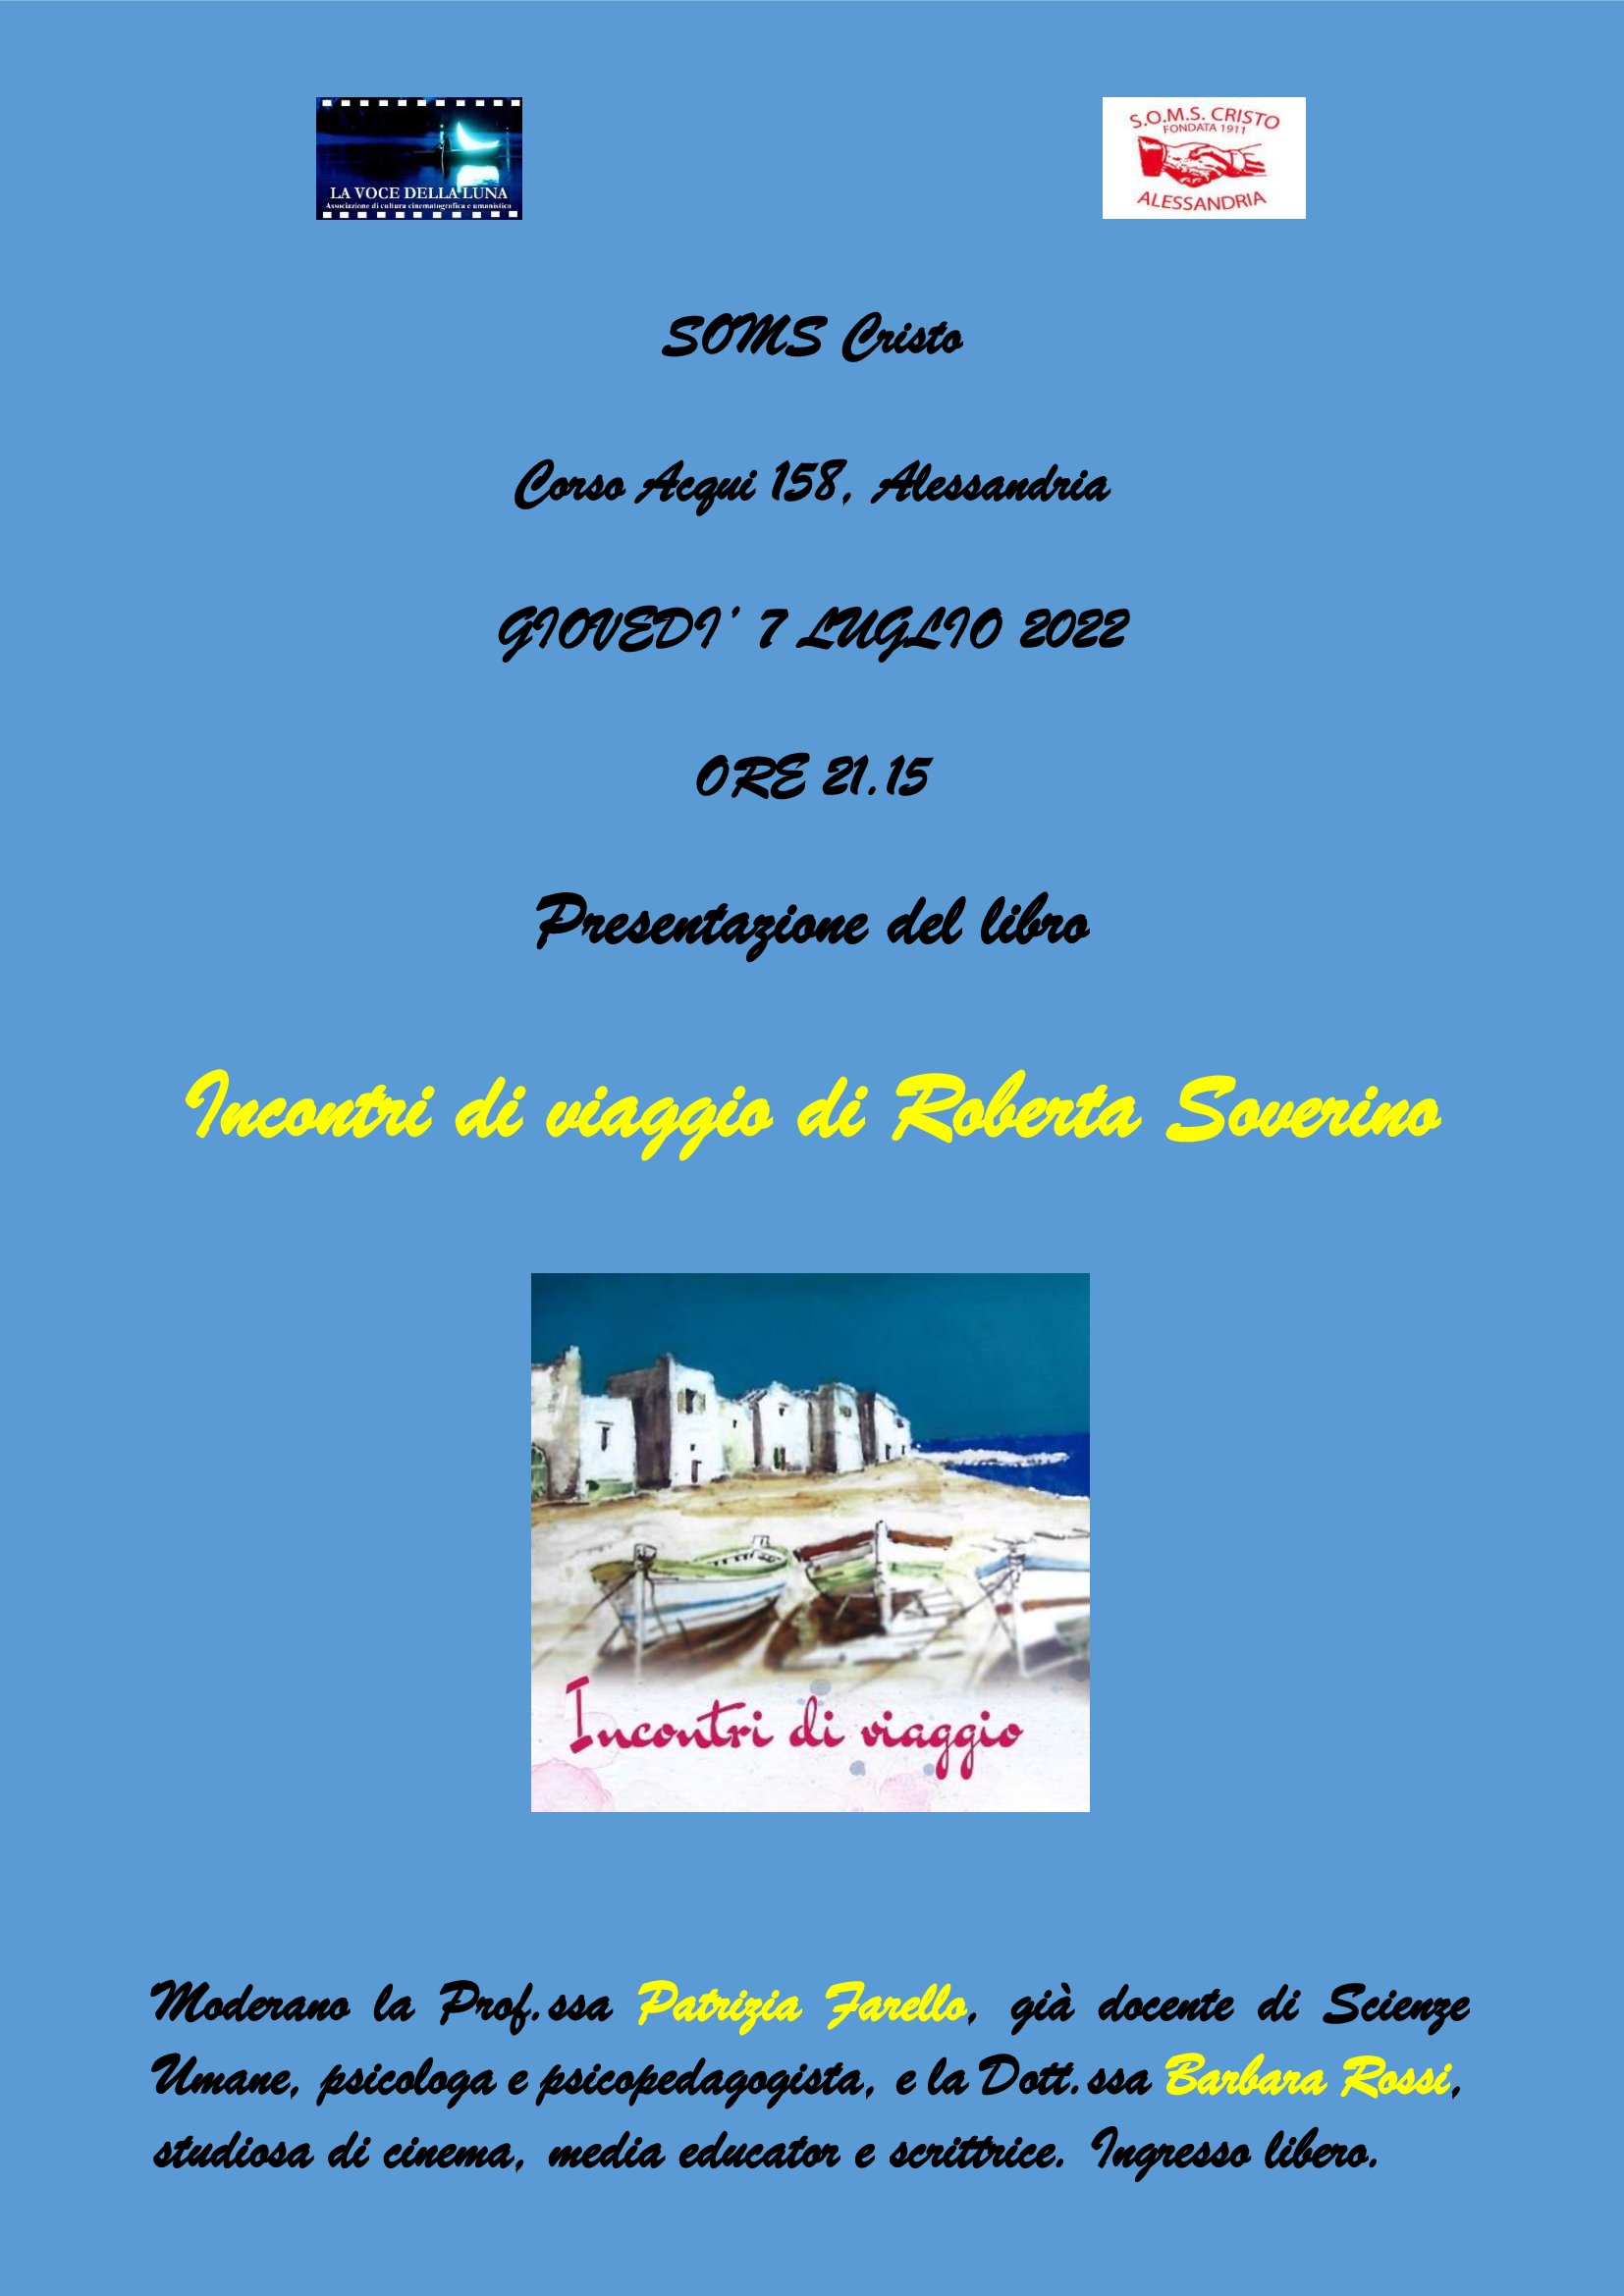 Il 7 luglio ad Alessandria Roberta Soverino presenta il suo libro “Incontri di Viaggio”